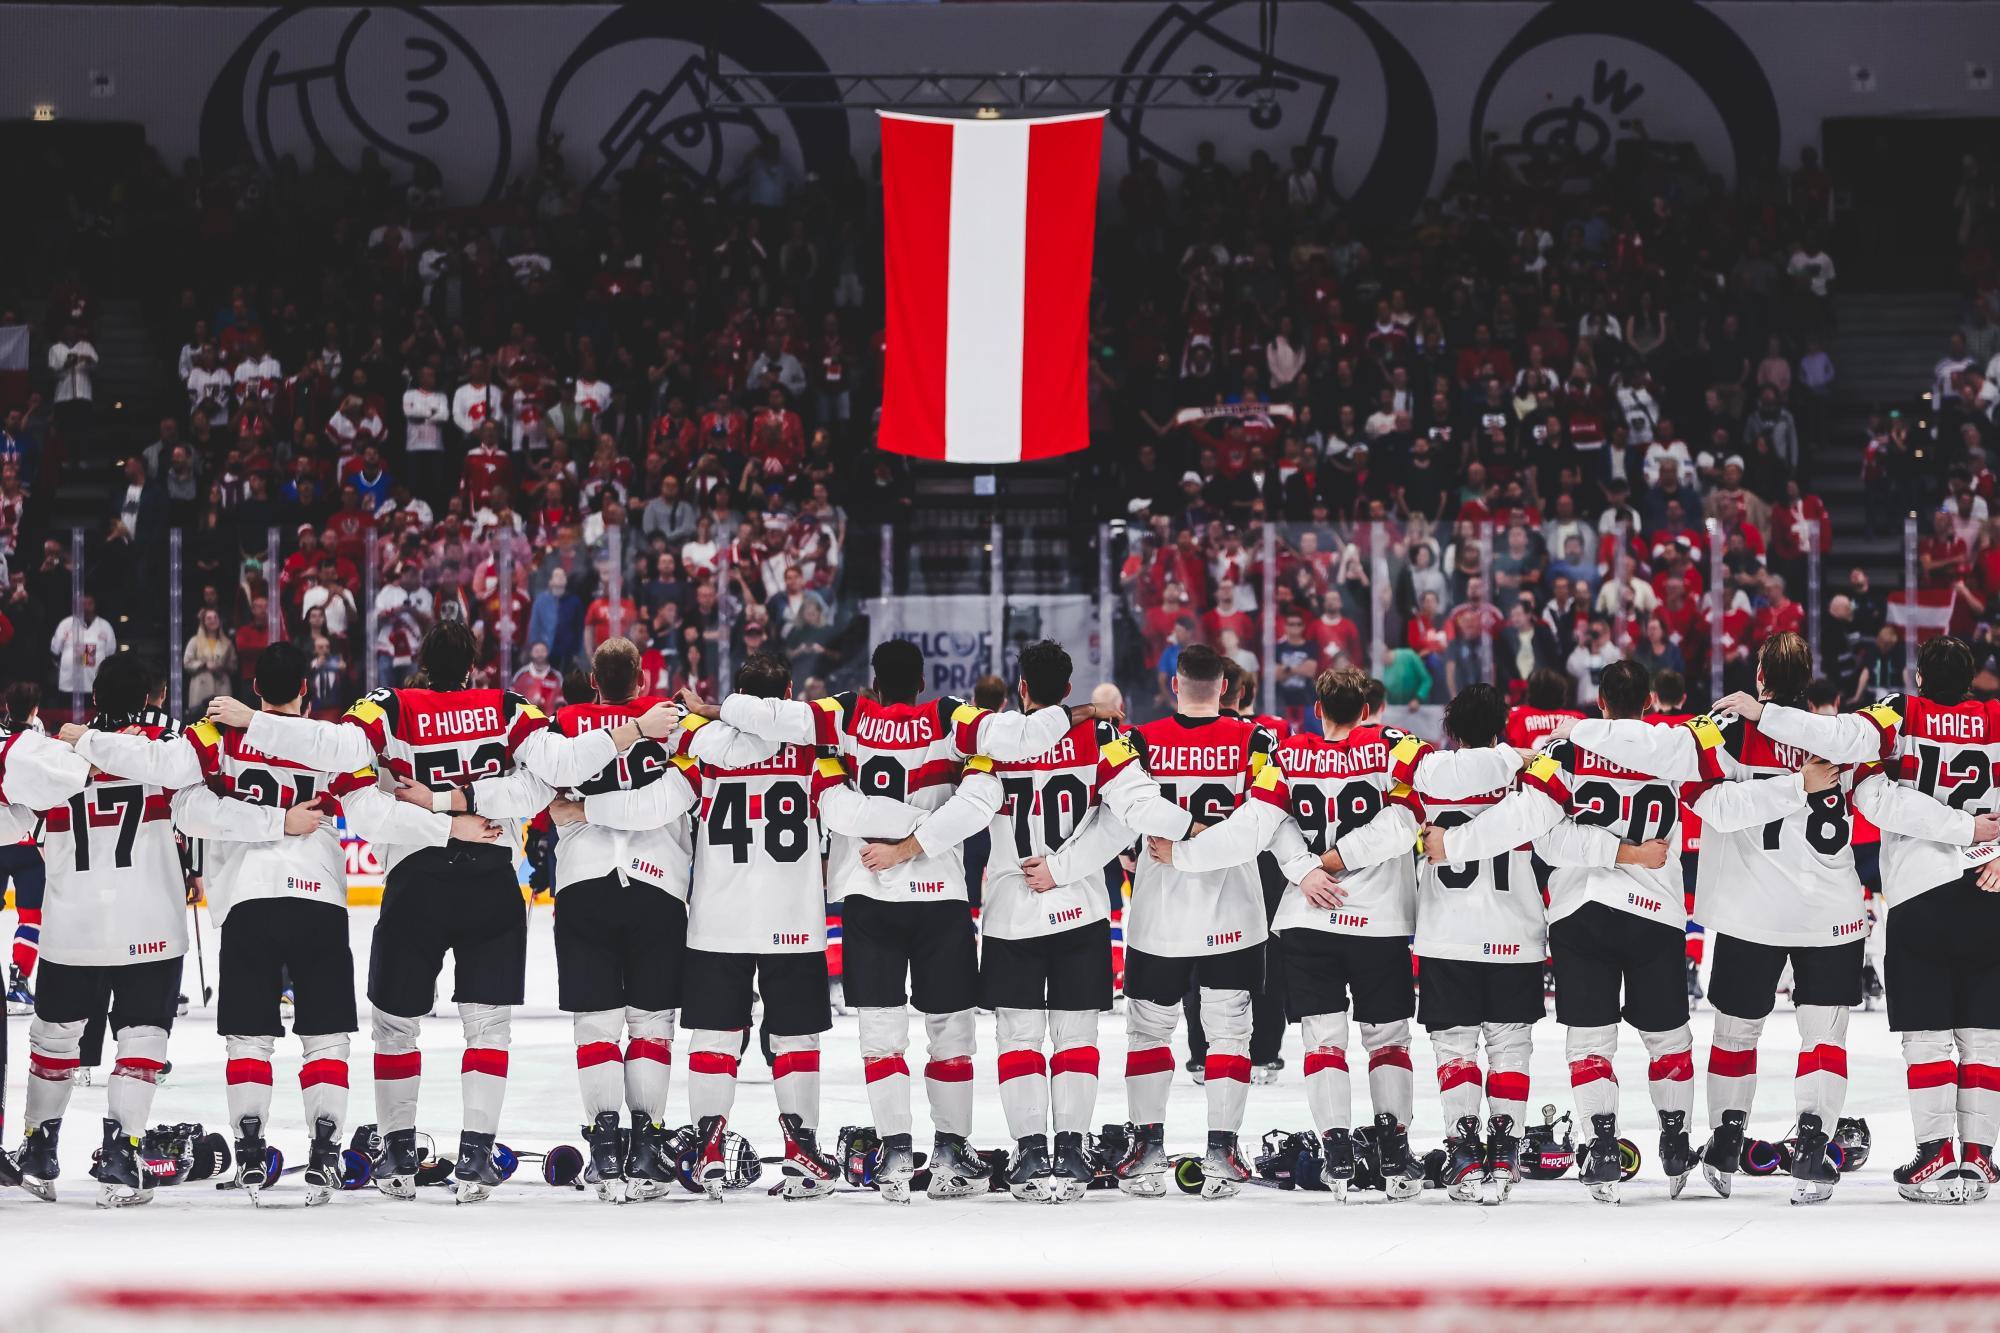 4:1 gegen Norwegen: Österreich darf vom Viertelfinale träumen